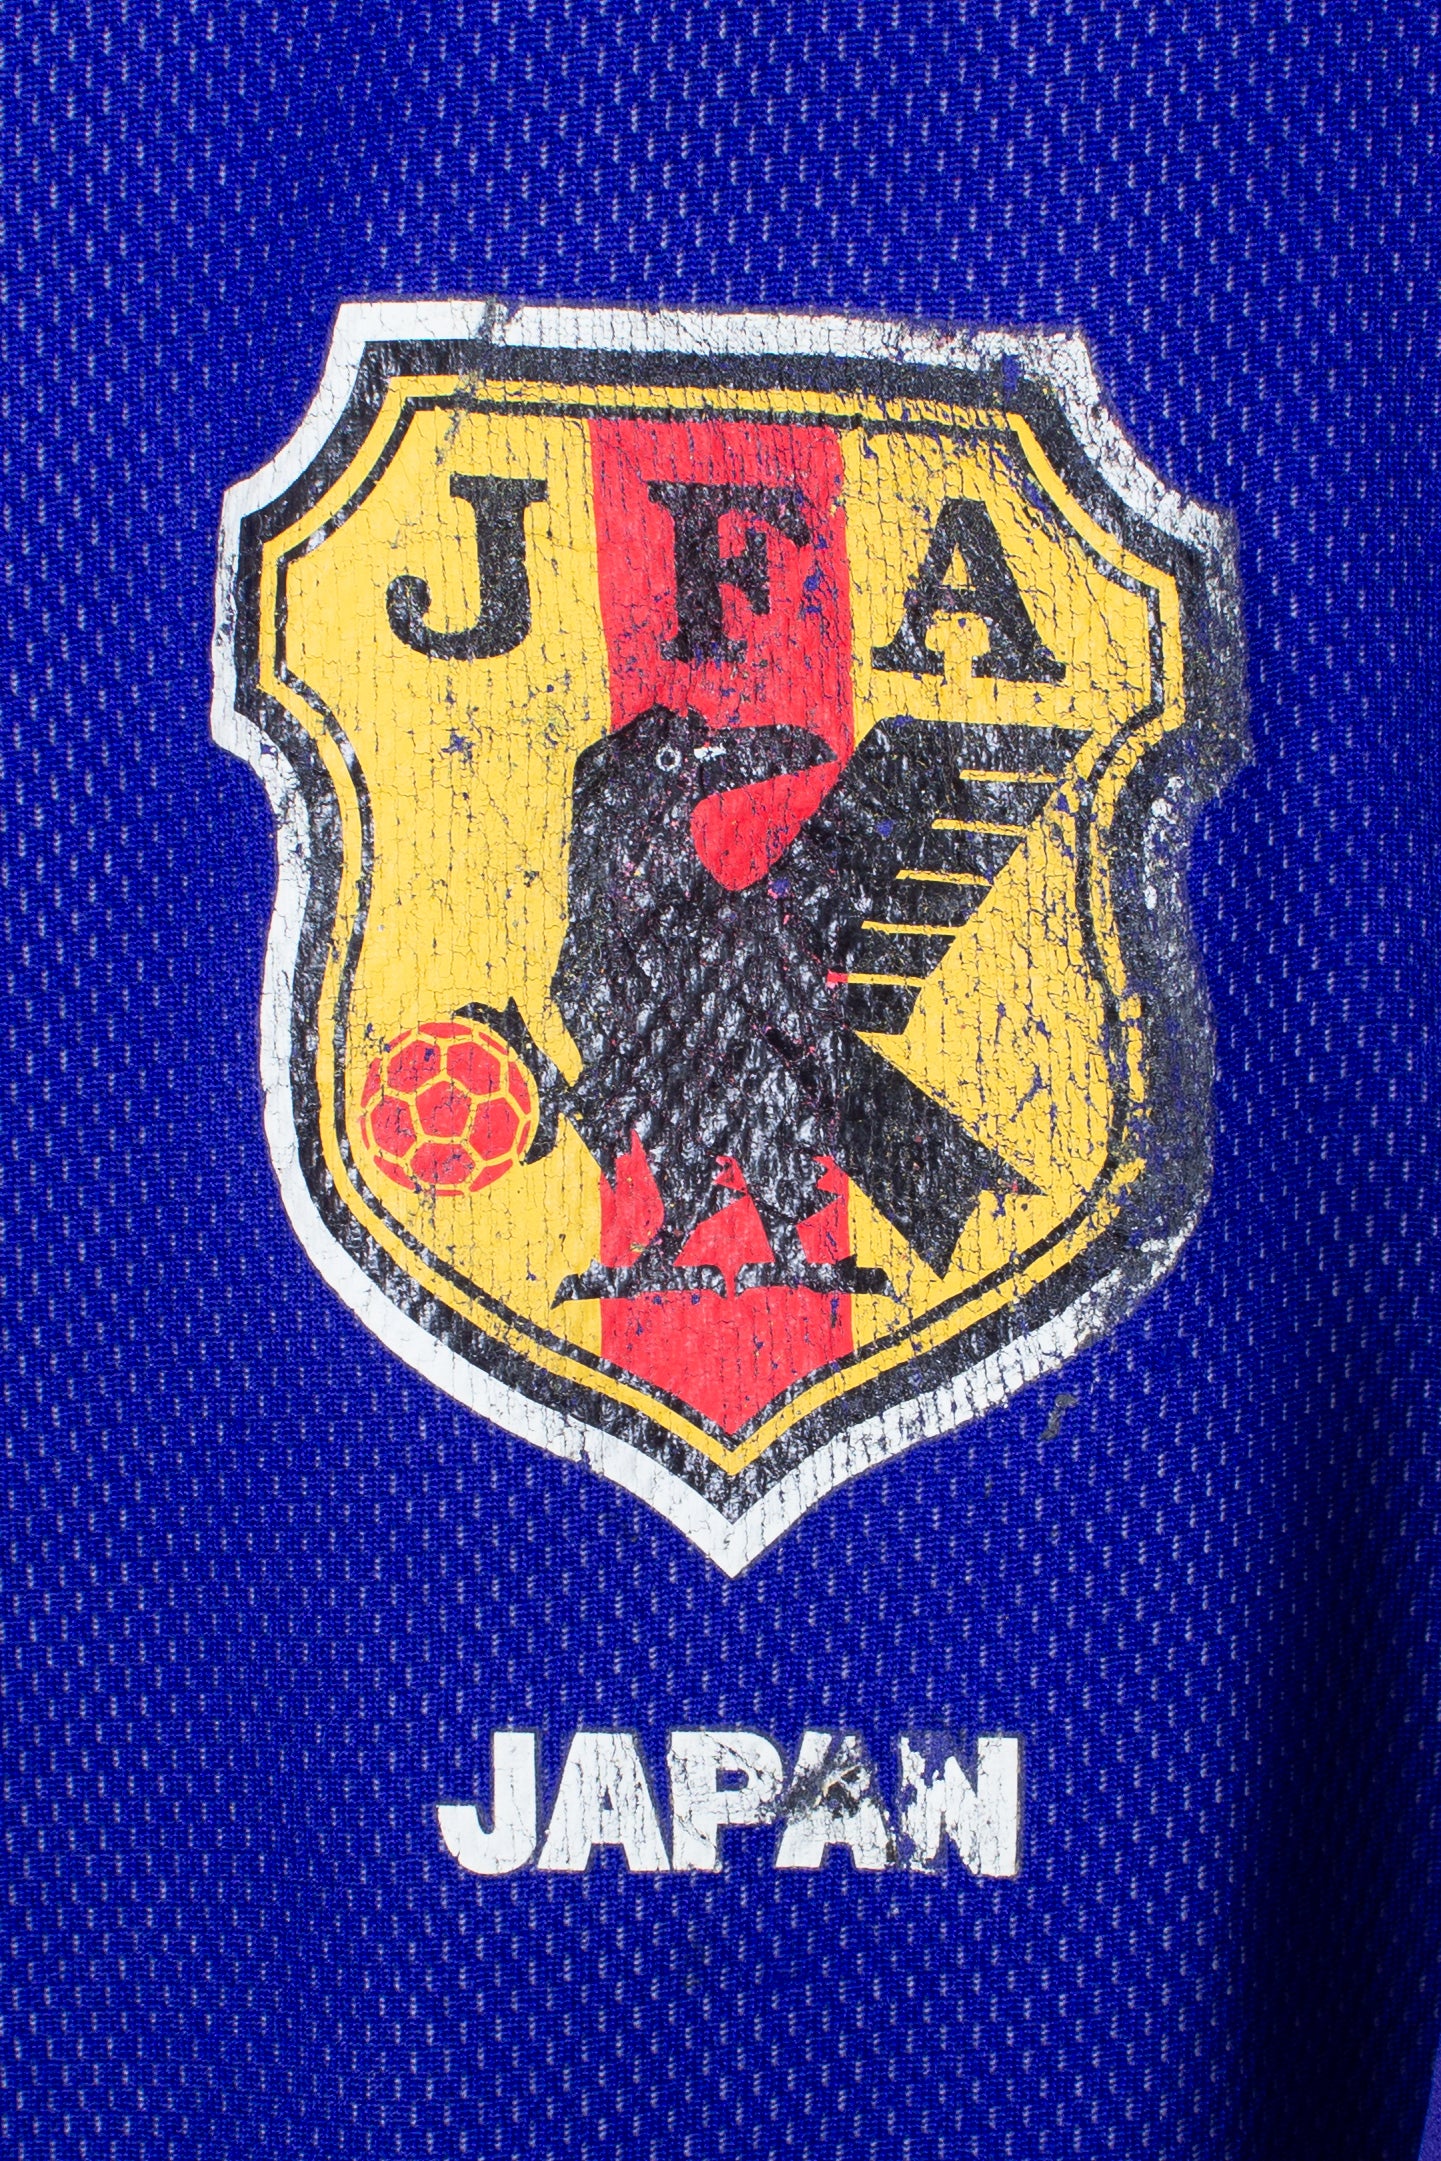 Japan 2002 Home Shirt (L)